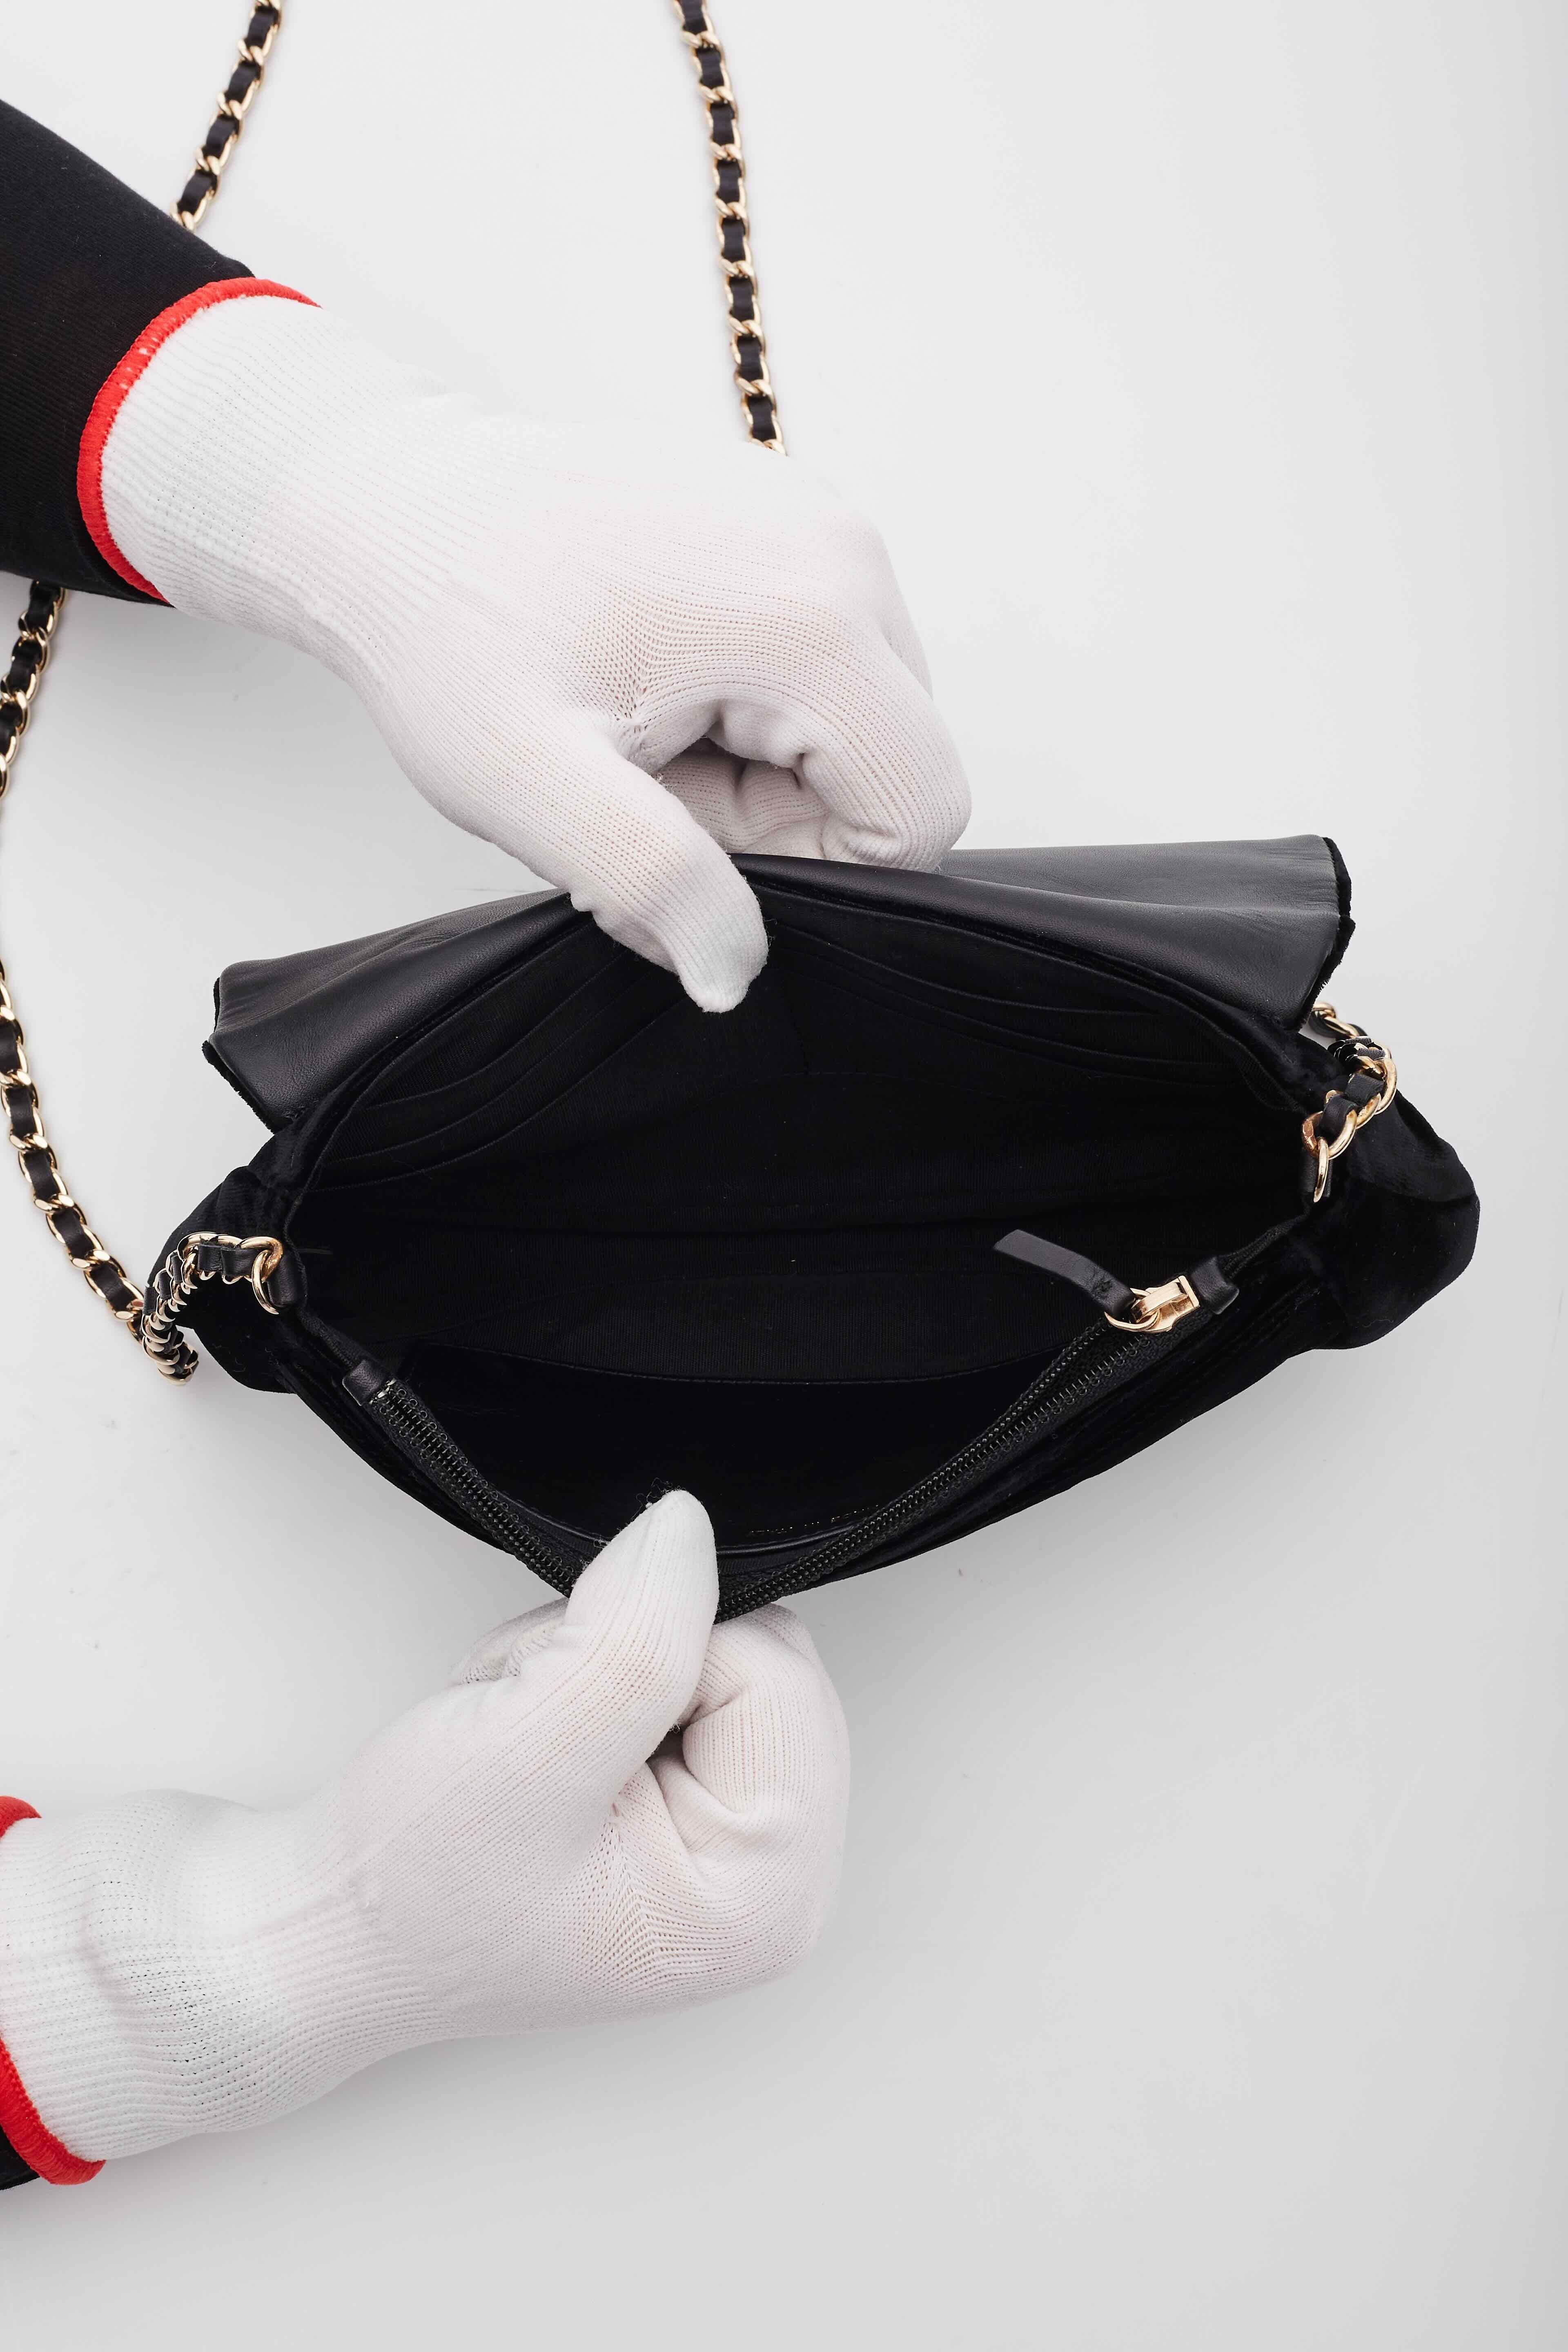 Chanel Velvet Half Moon Black Wallet on Chain Bag For Sale 4